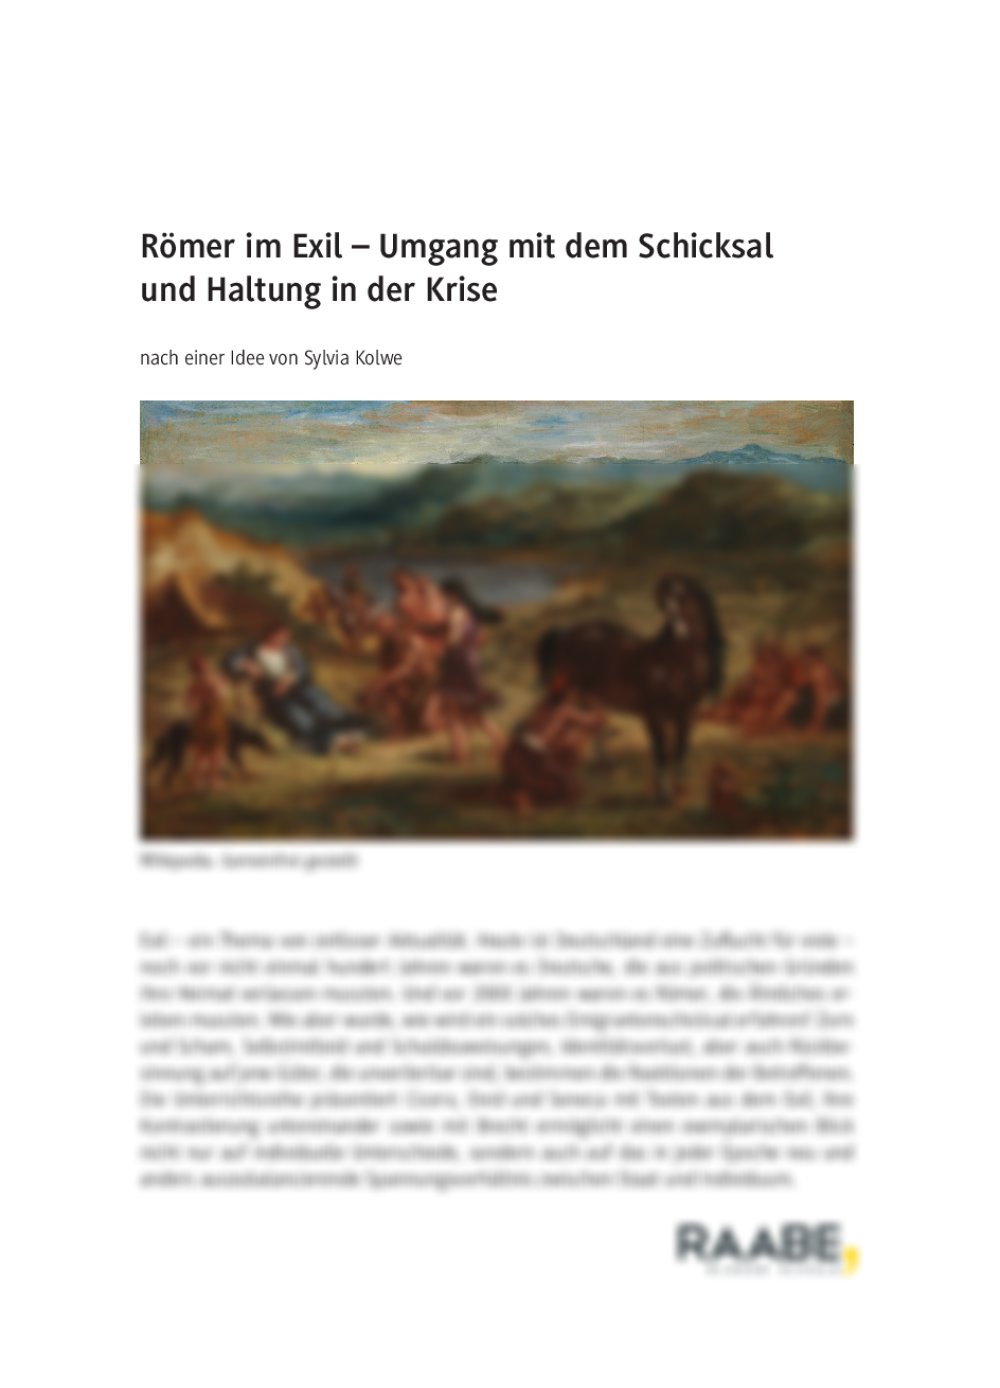 Römer im Exil - Seite 1